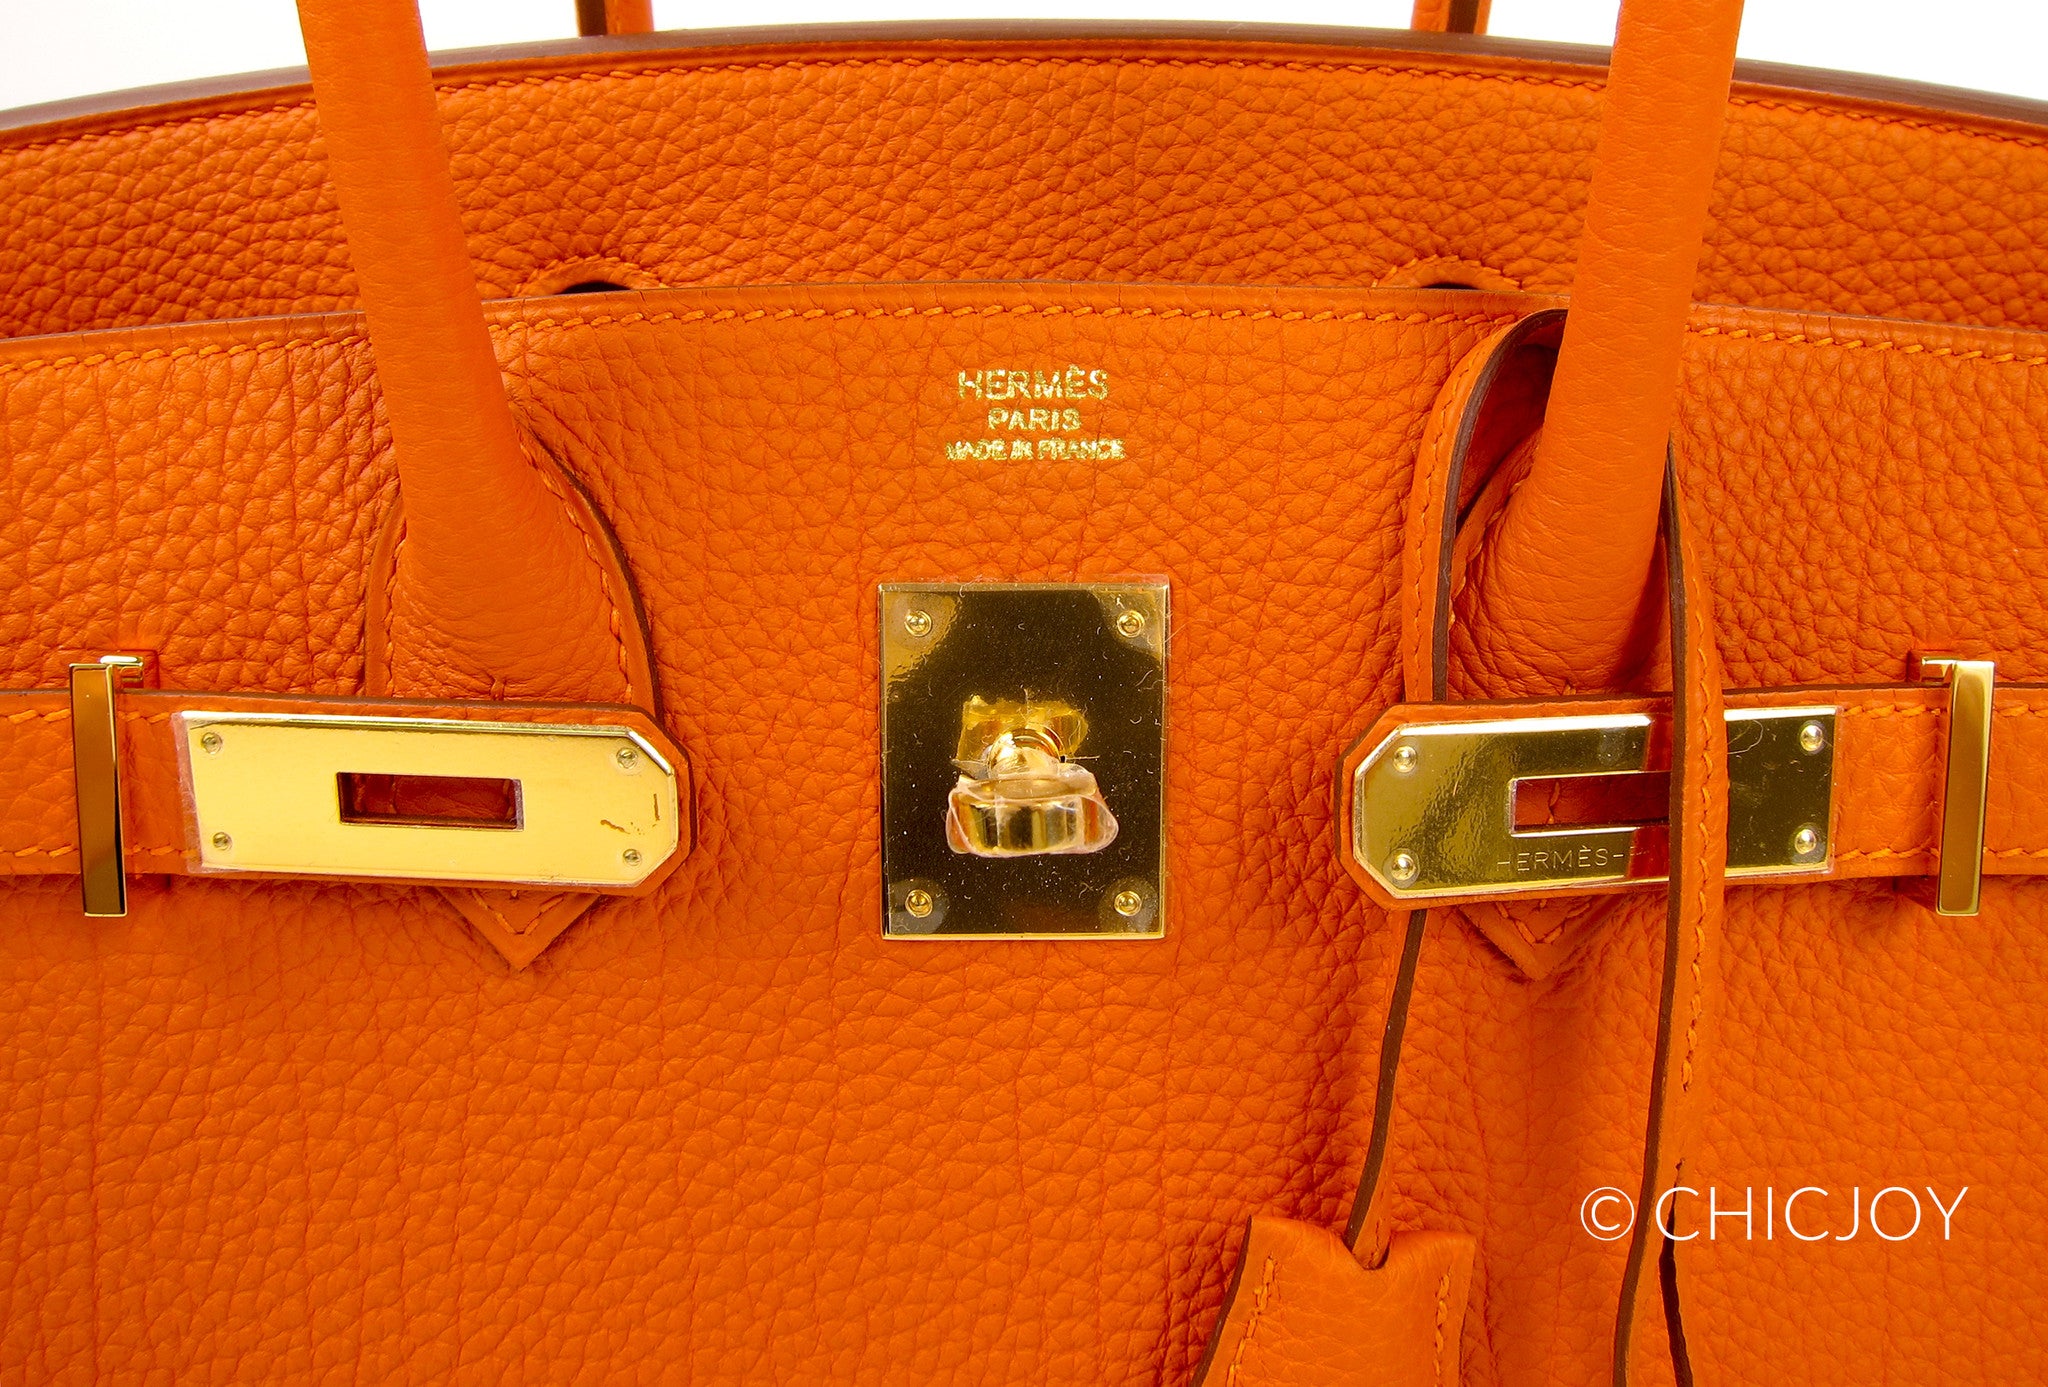 Hermes Birkin Bag 30cm Orange Togo Gold Hardware